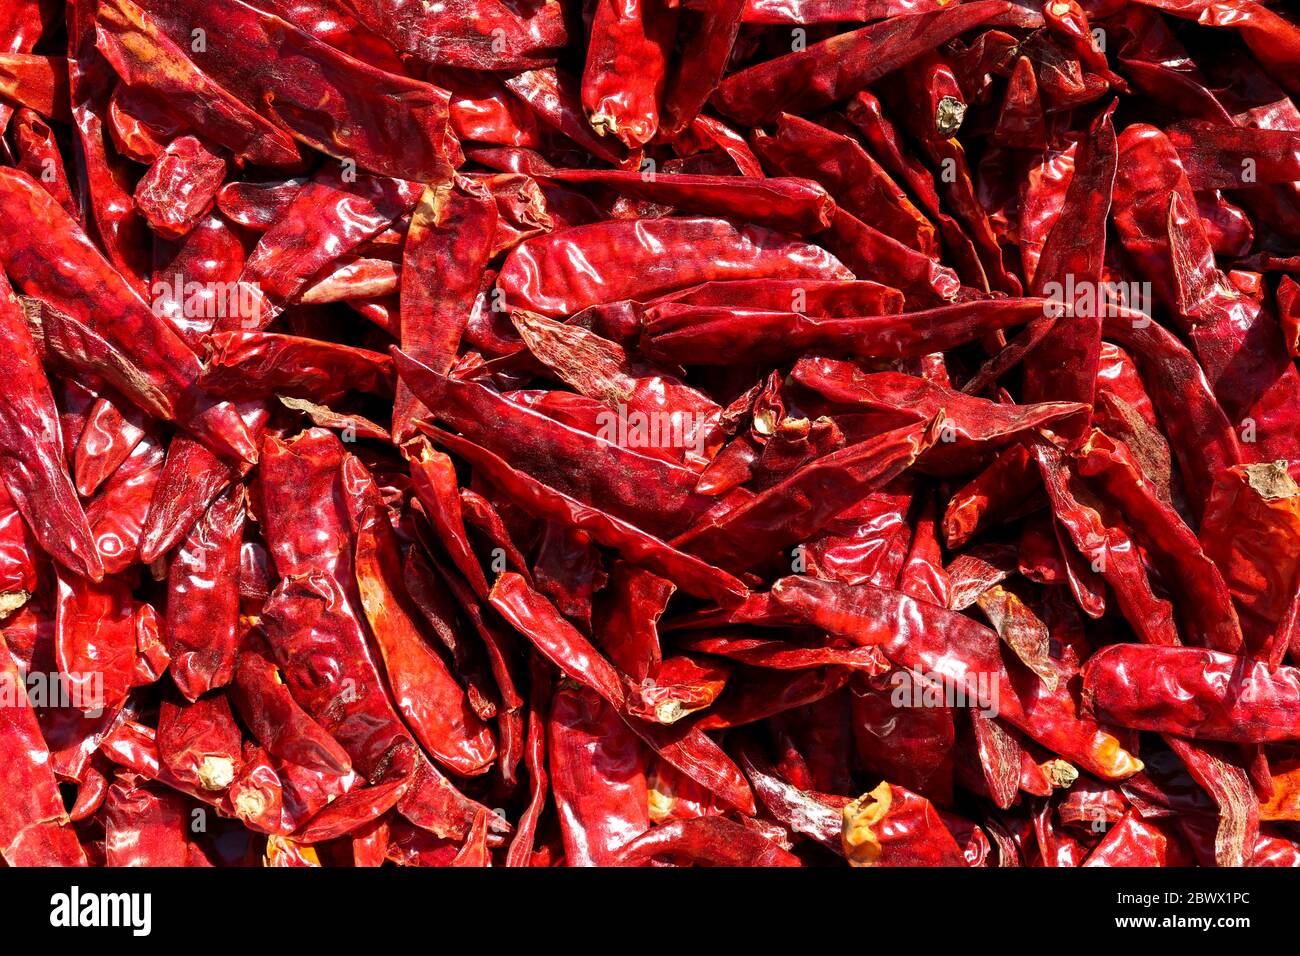 Haufen getrockneter roter Chilischoten oder Chili Cayennepfeffer. Stockfoto